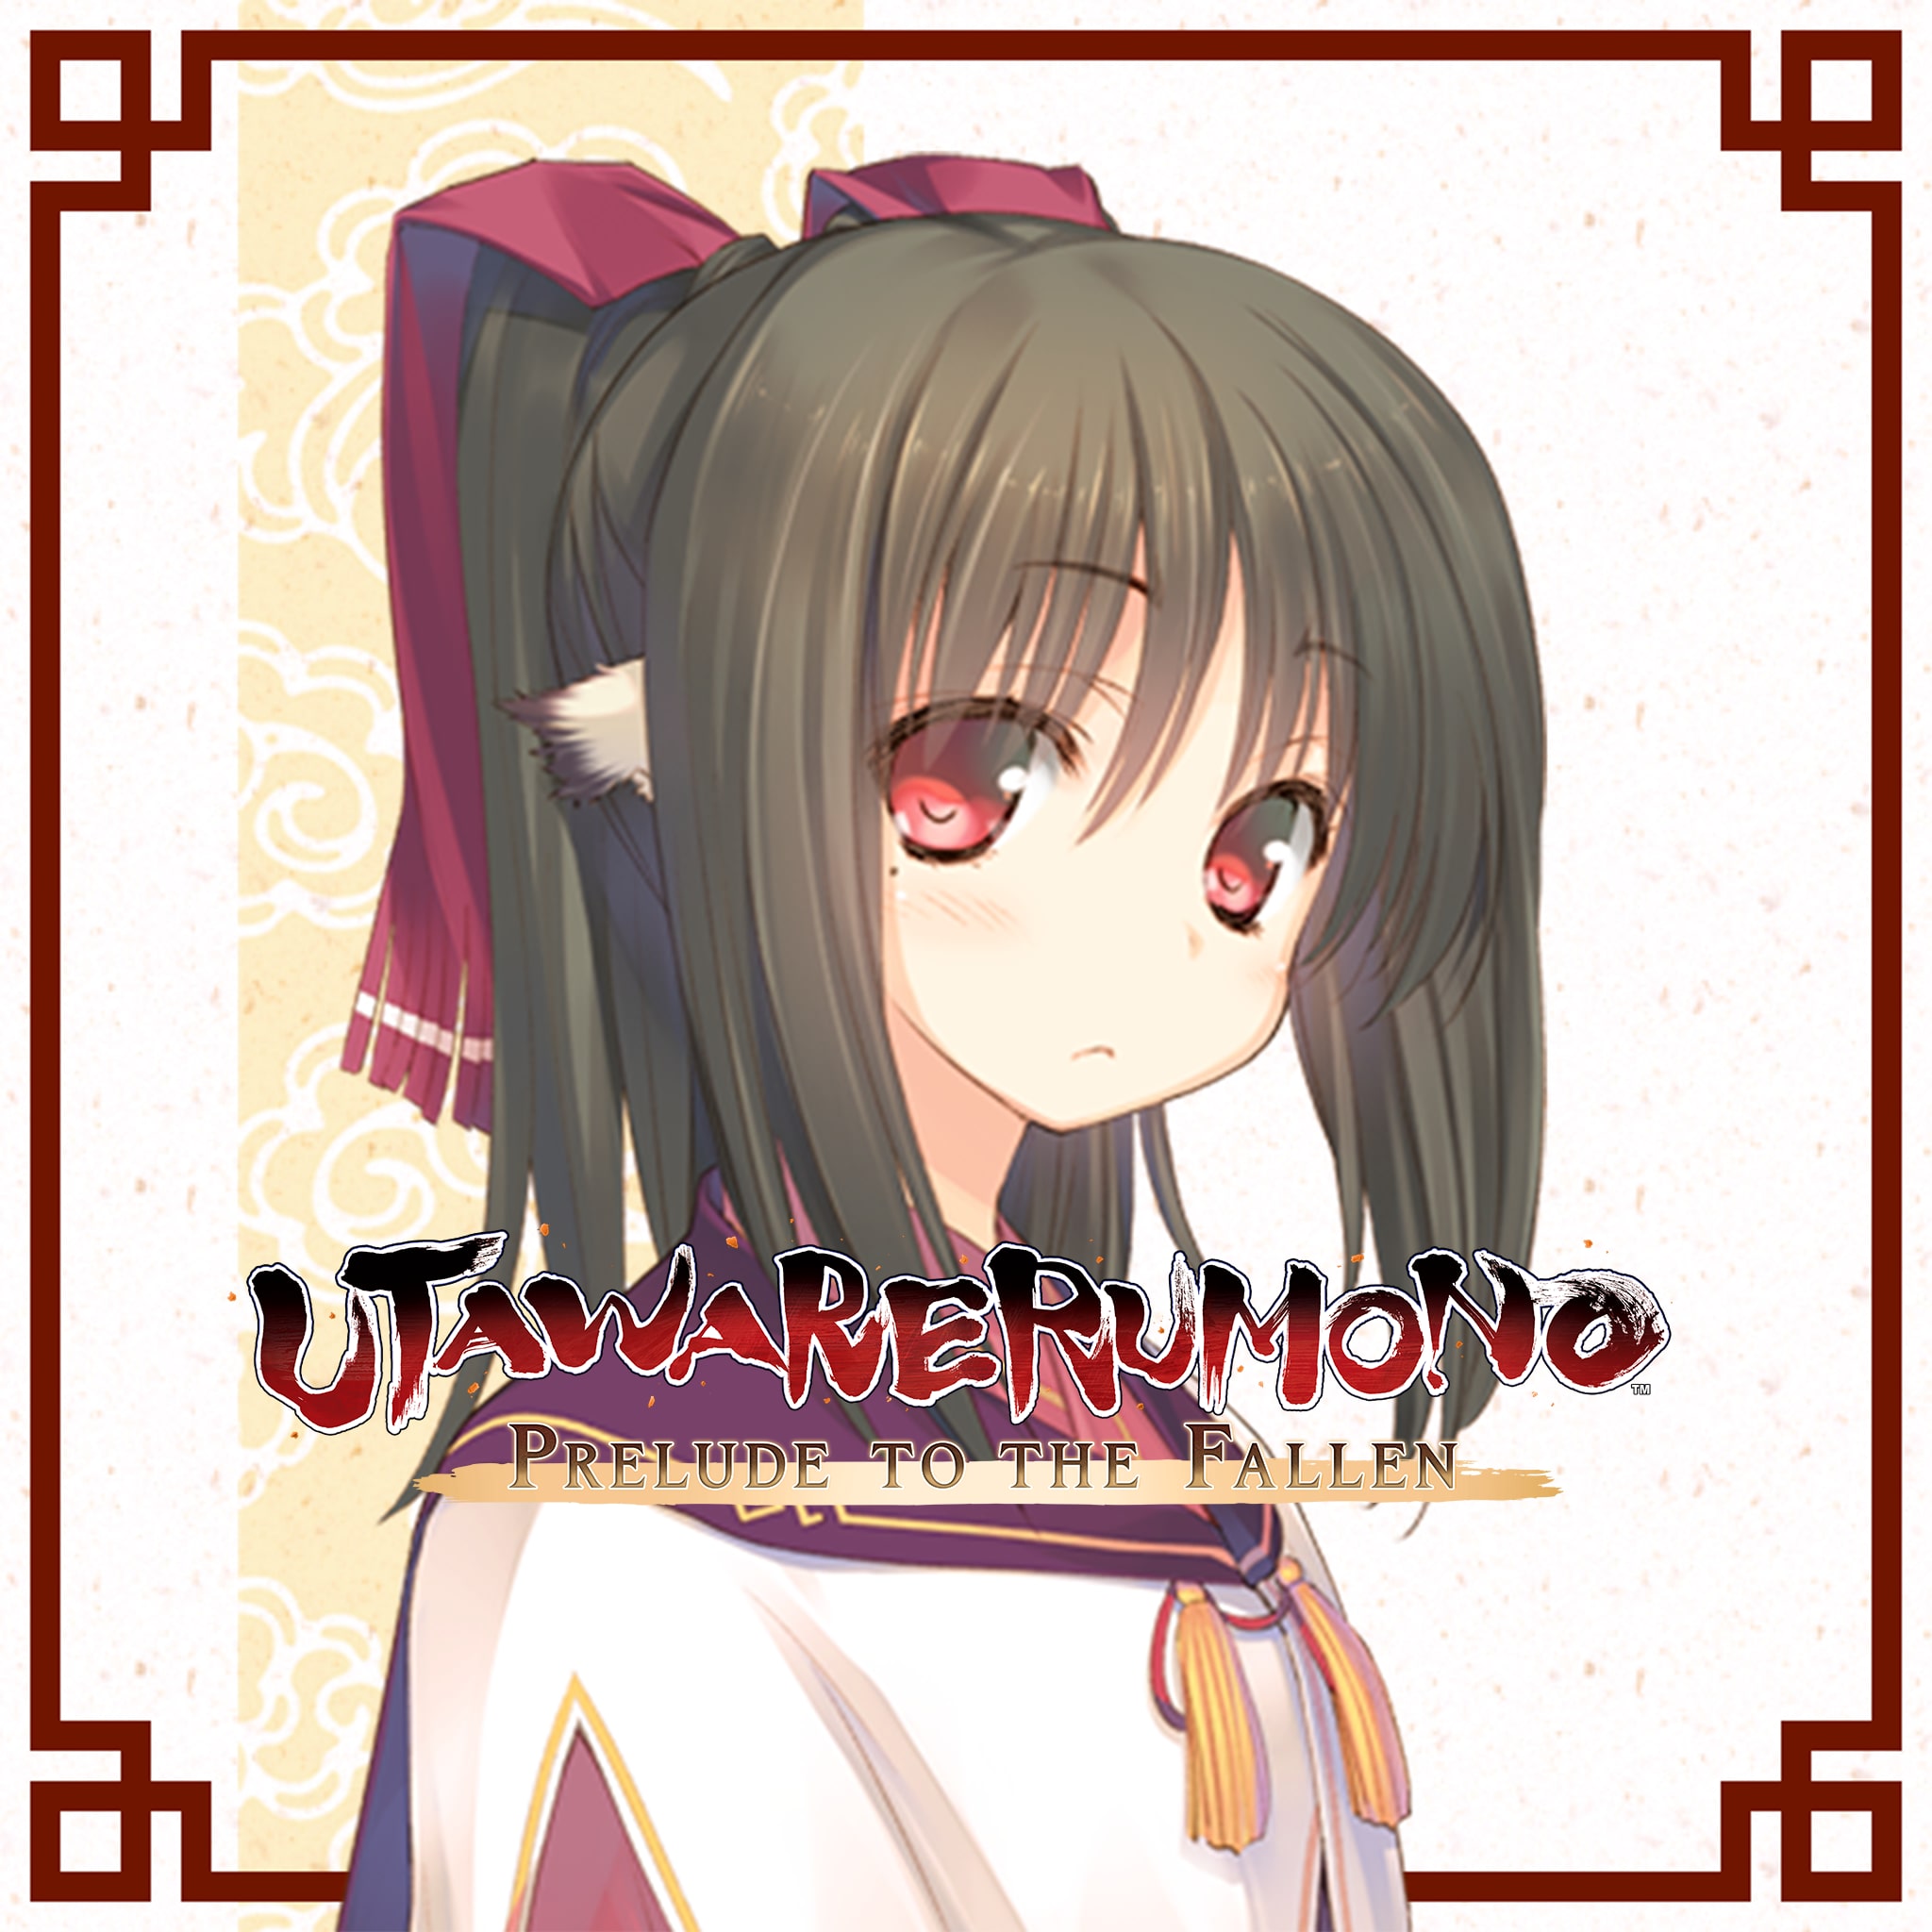 Utawarerumono: Prelude to the Fallen - DLC Character: Nekone